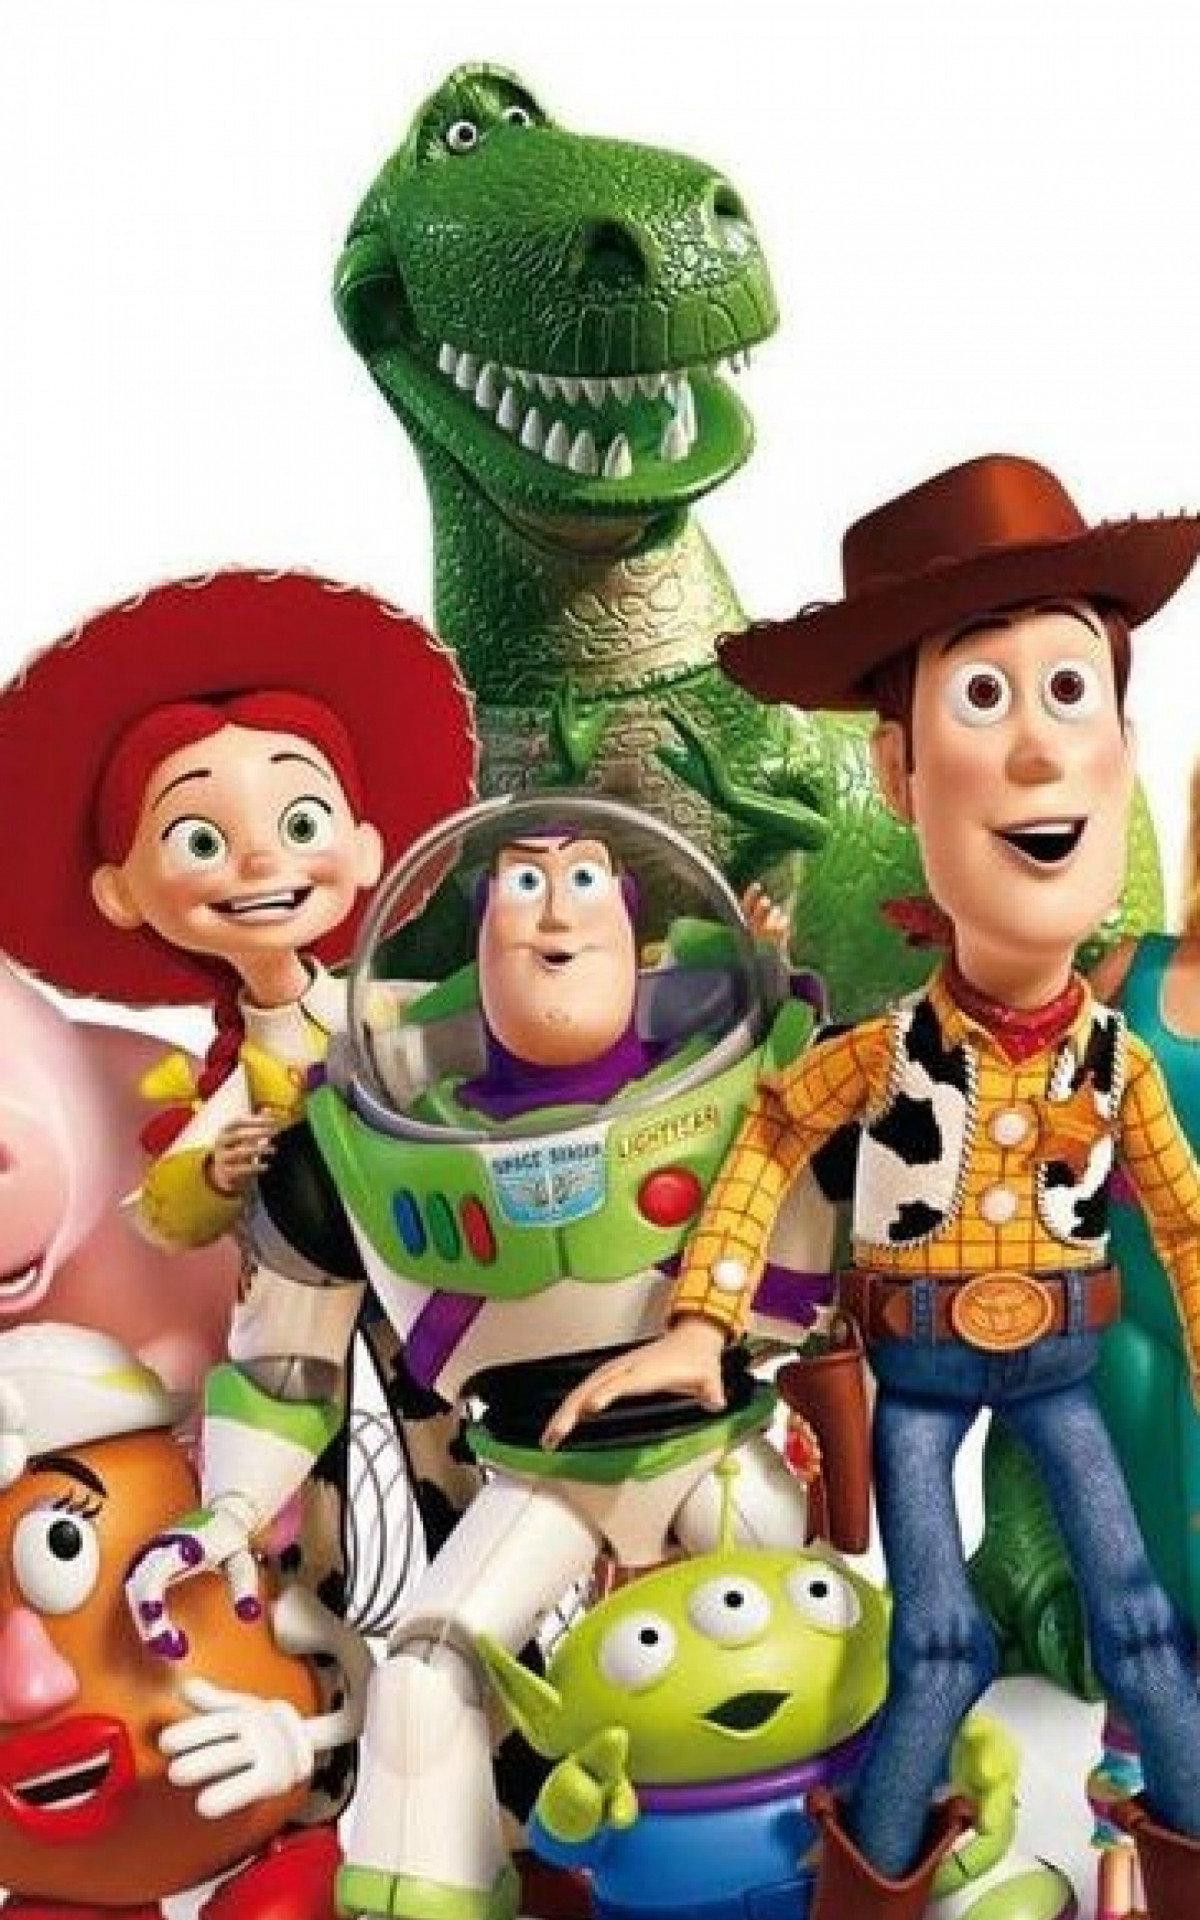 Toy Story, Frozen e Zootopia terão sequências, anuncia Disney